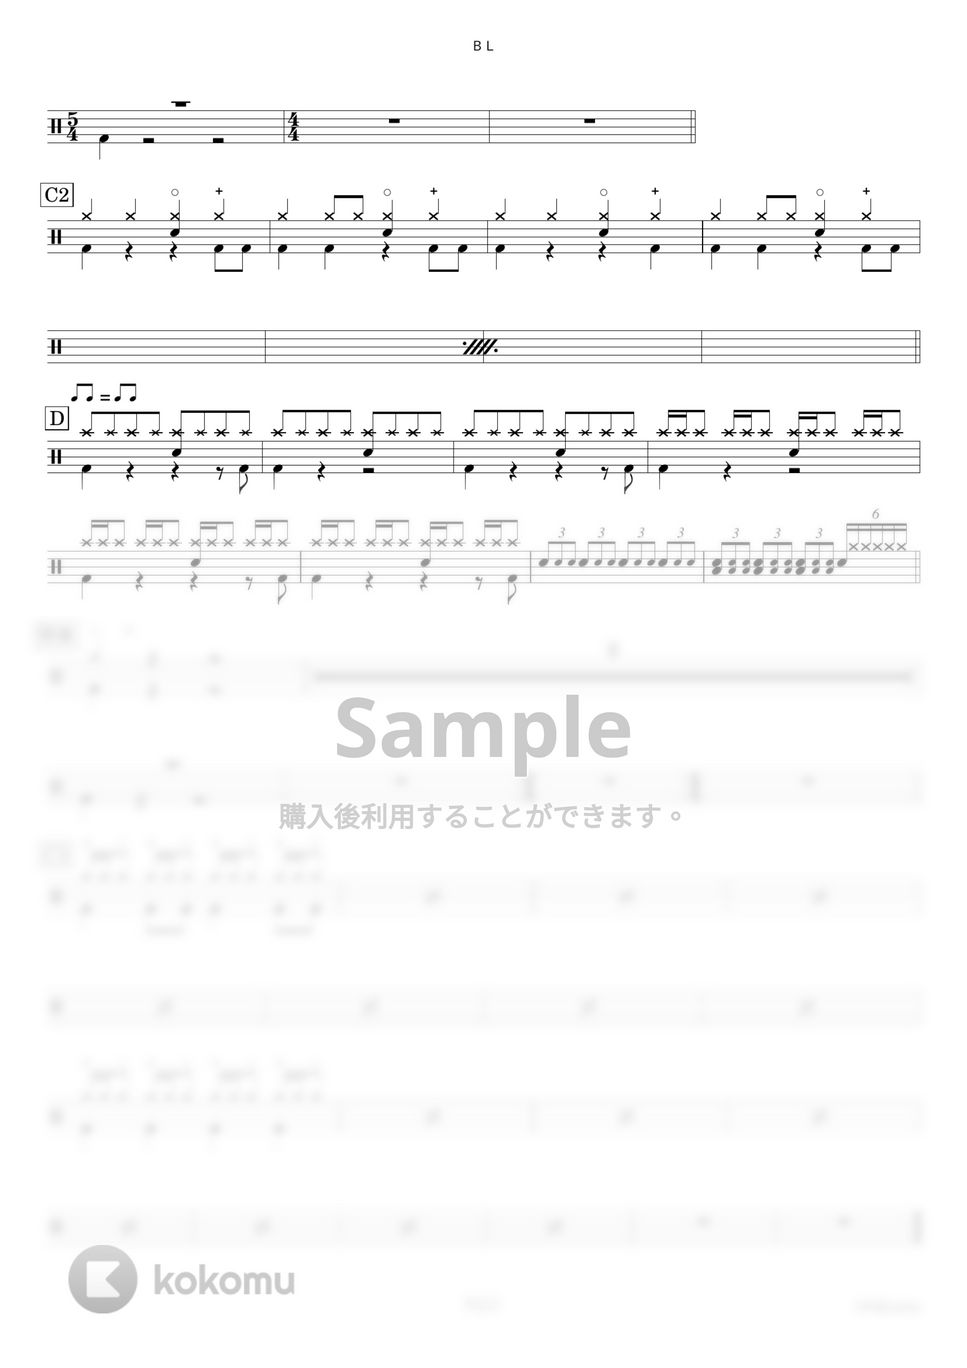 女王蜂 - ＢＬ【ドラム楽譜〔完コピ〕】.pdf by HYdrums